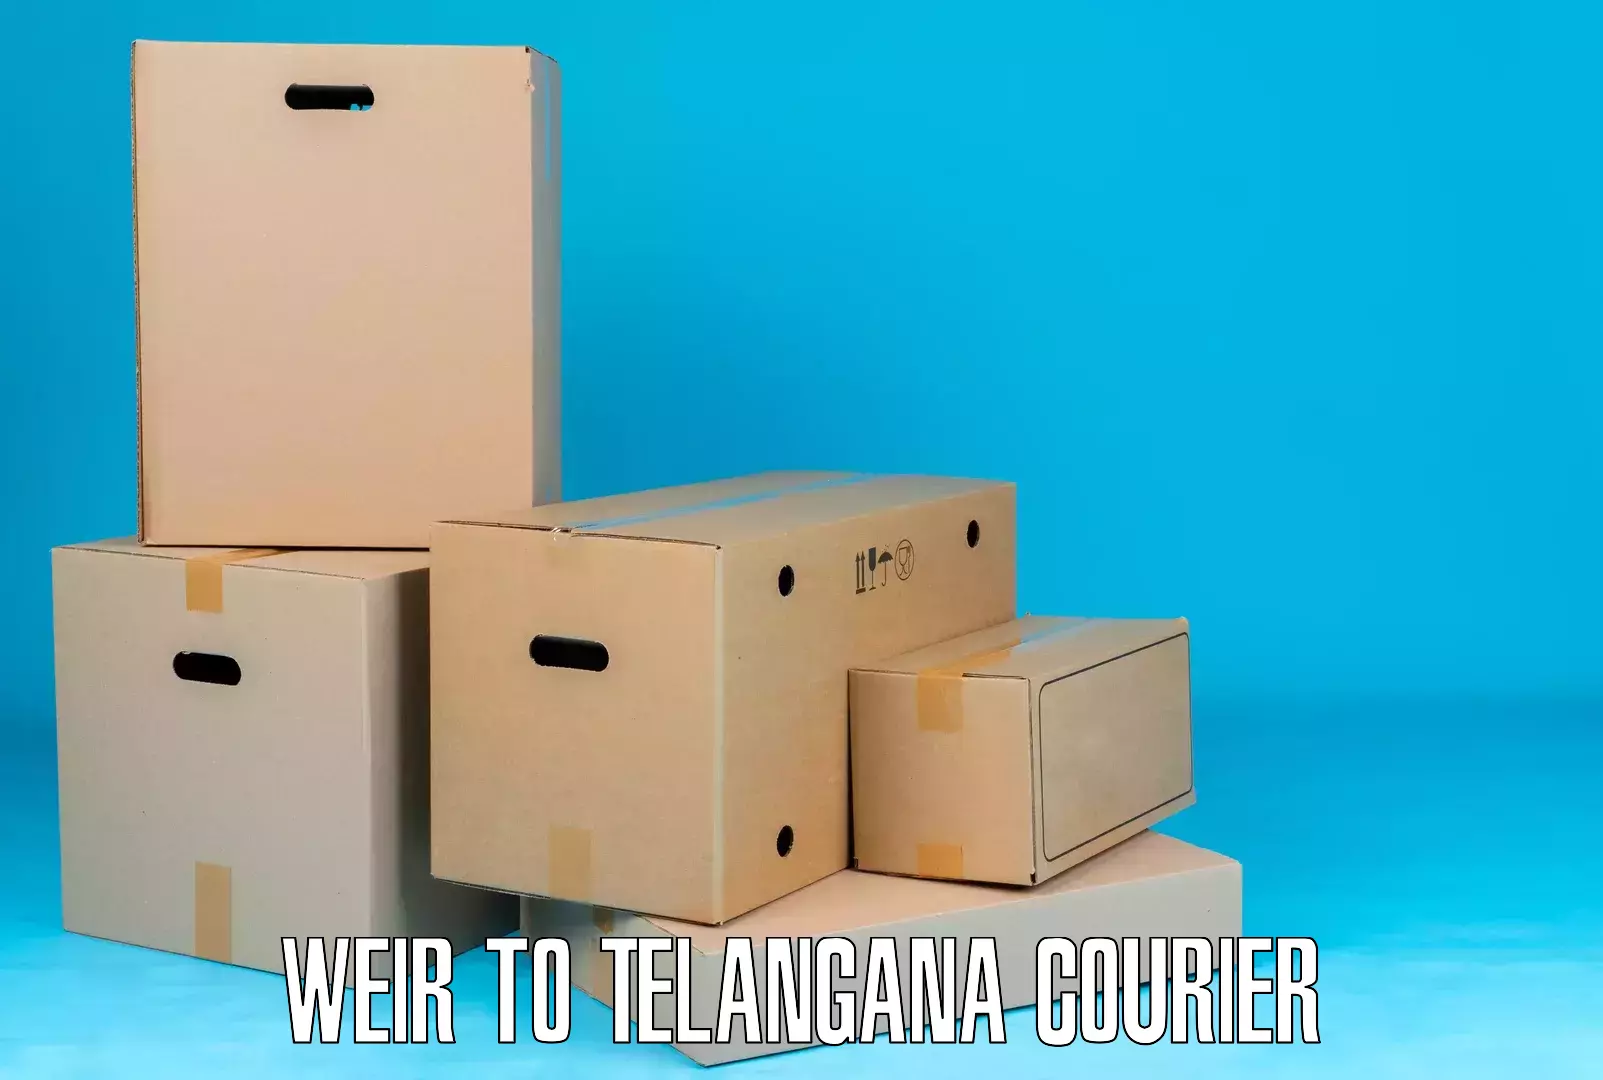 Efficient parcel service Weir to Tallada